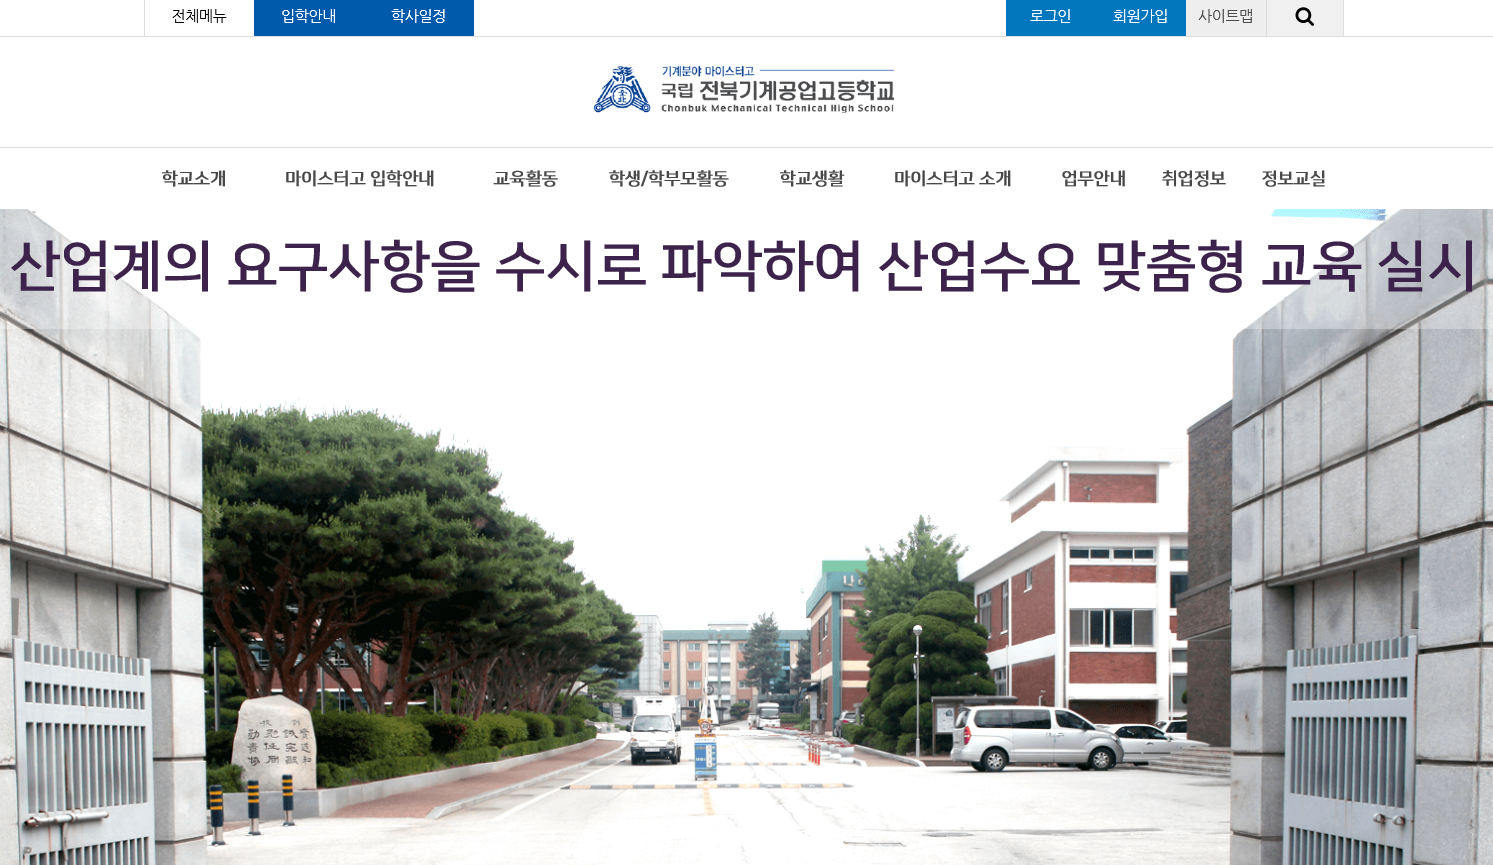 전북기계공업고등학교 대표 홈페이지 스크릿샷